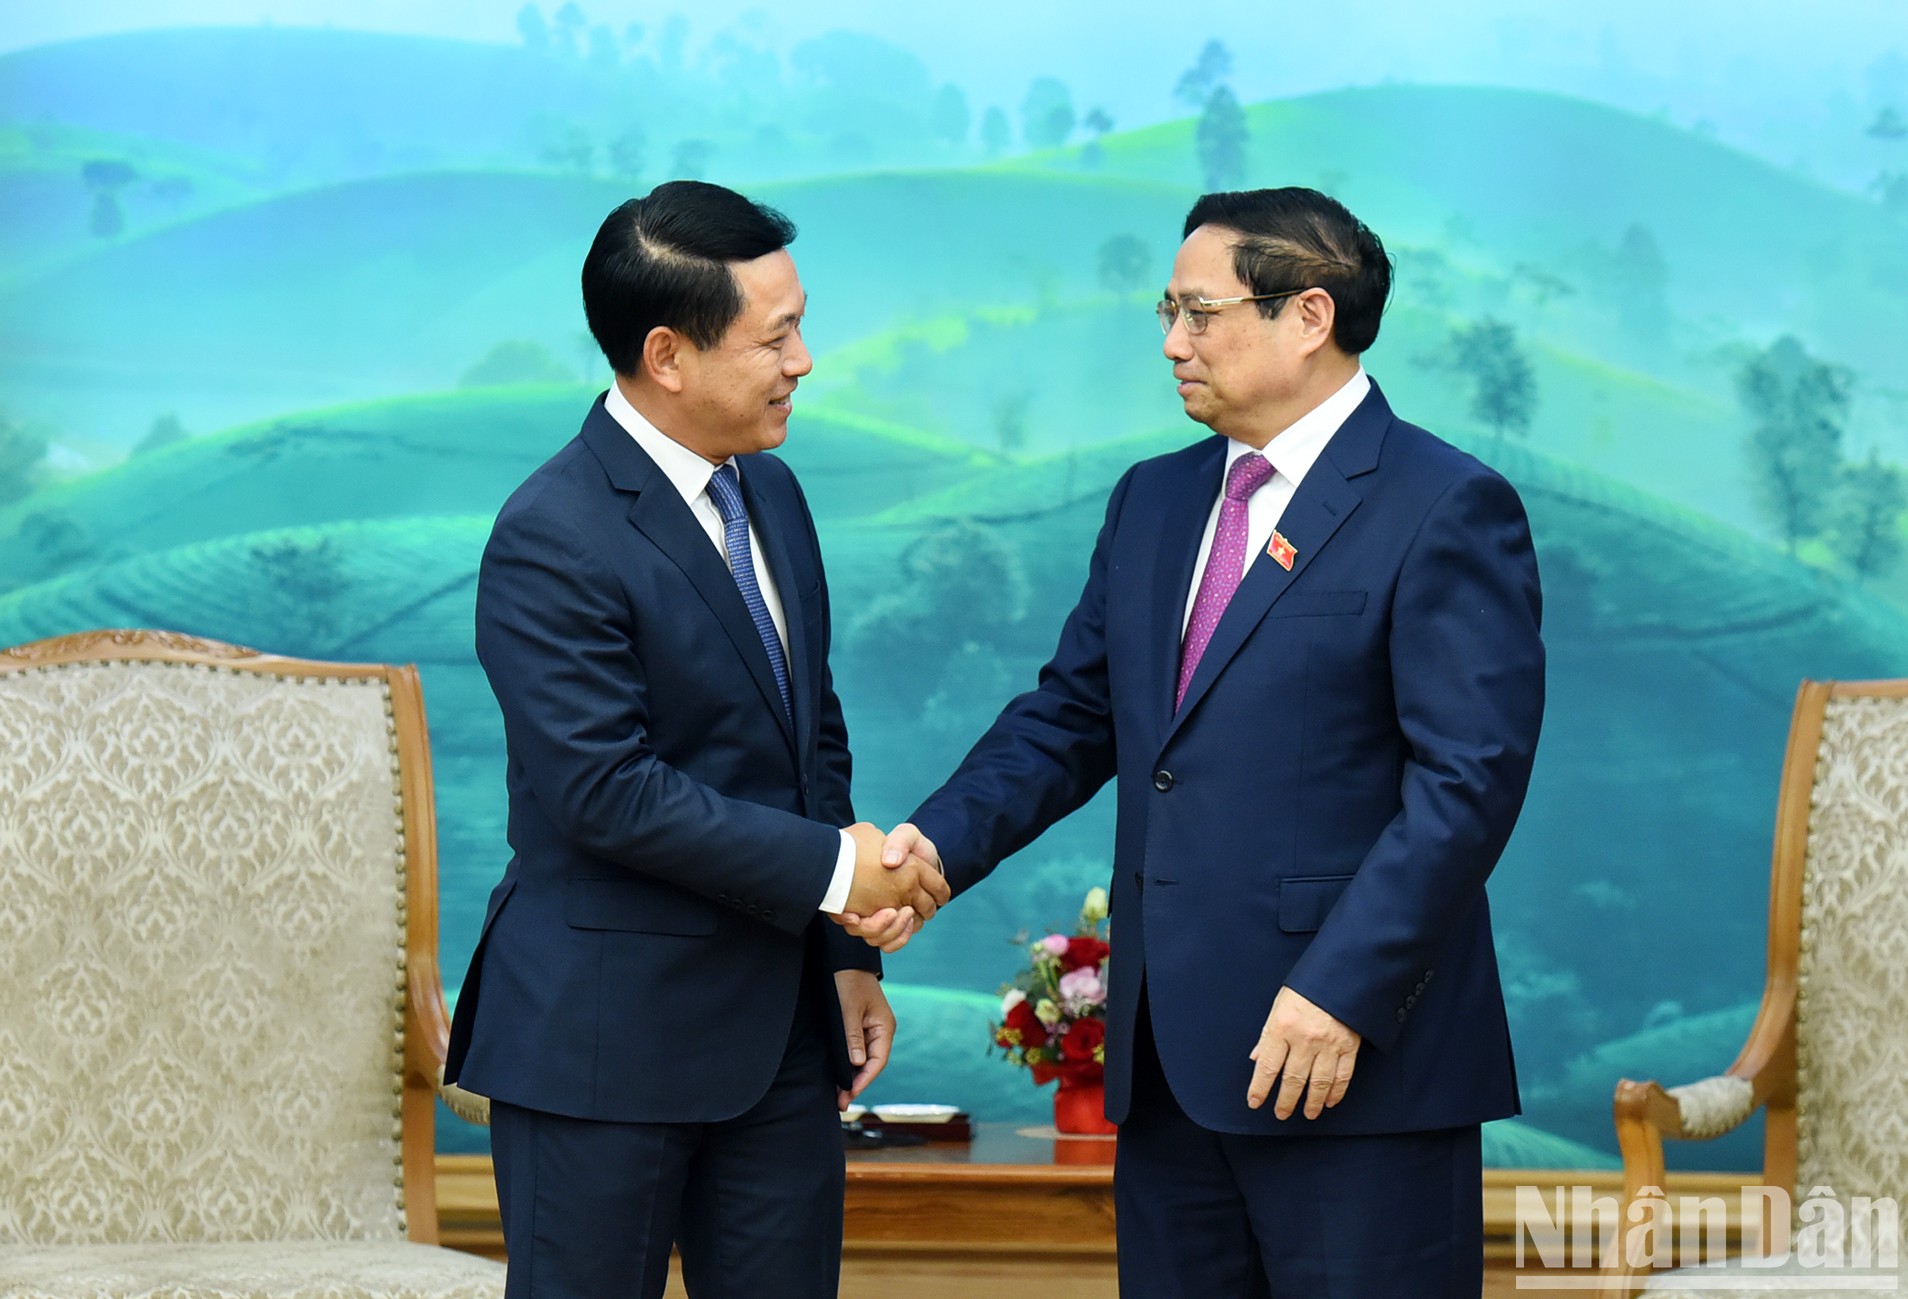 El primer ministro de Vietnam, Pham Minh Chinh, recibe al viceprimer ministro y canciller de Laos, Saleumxay Kommasith.